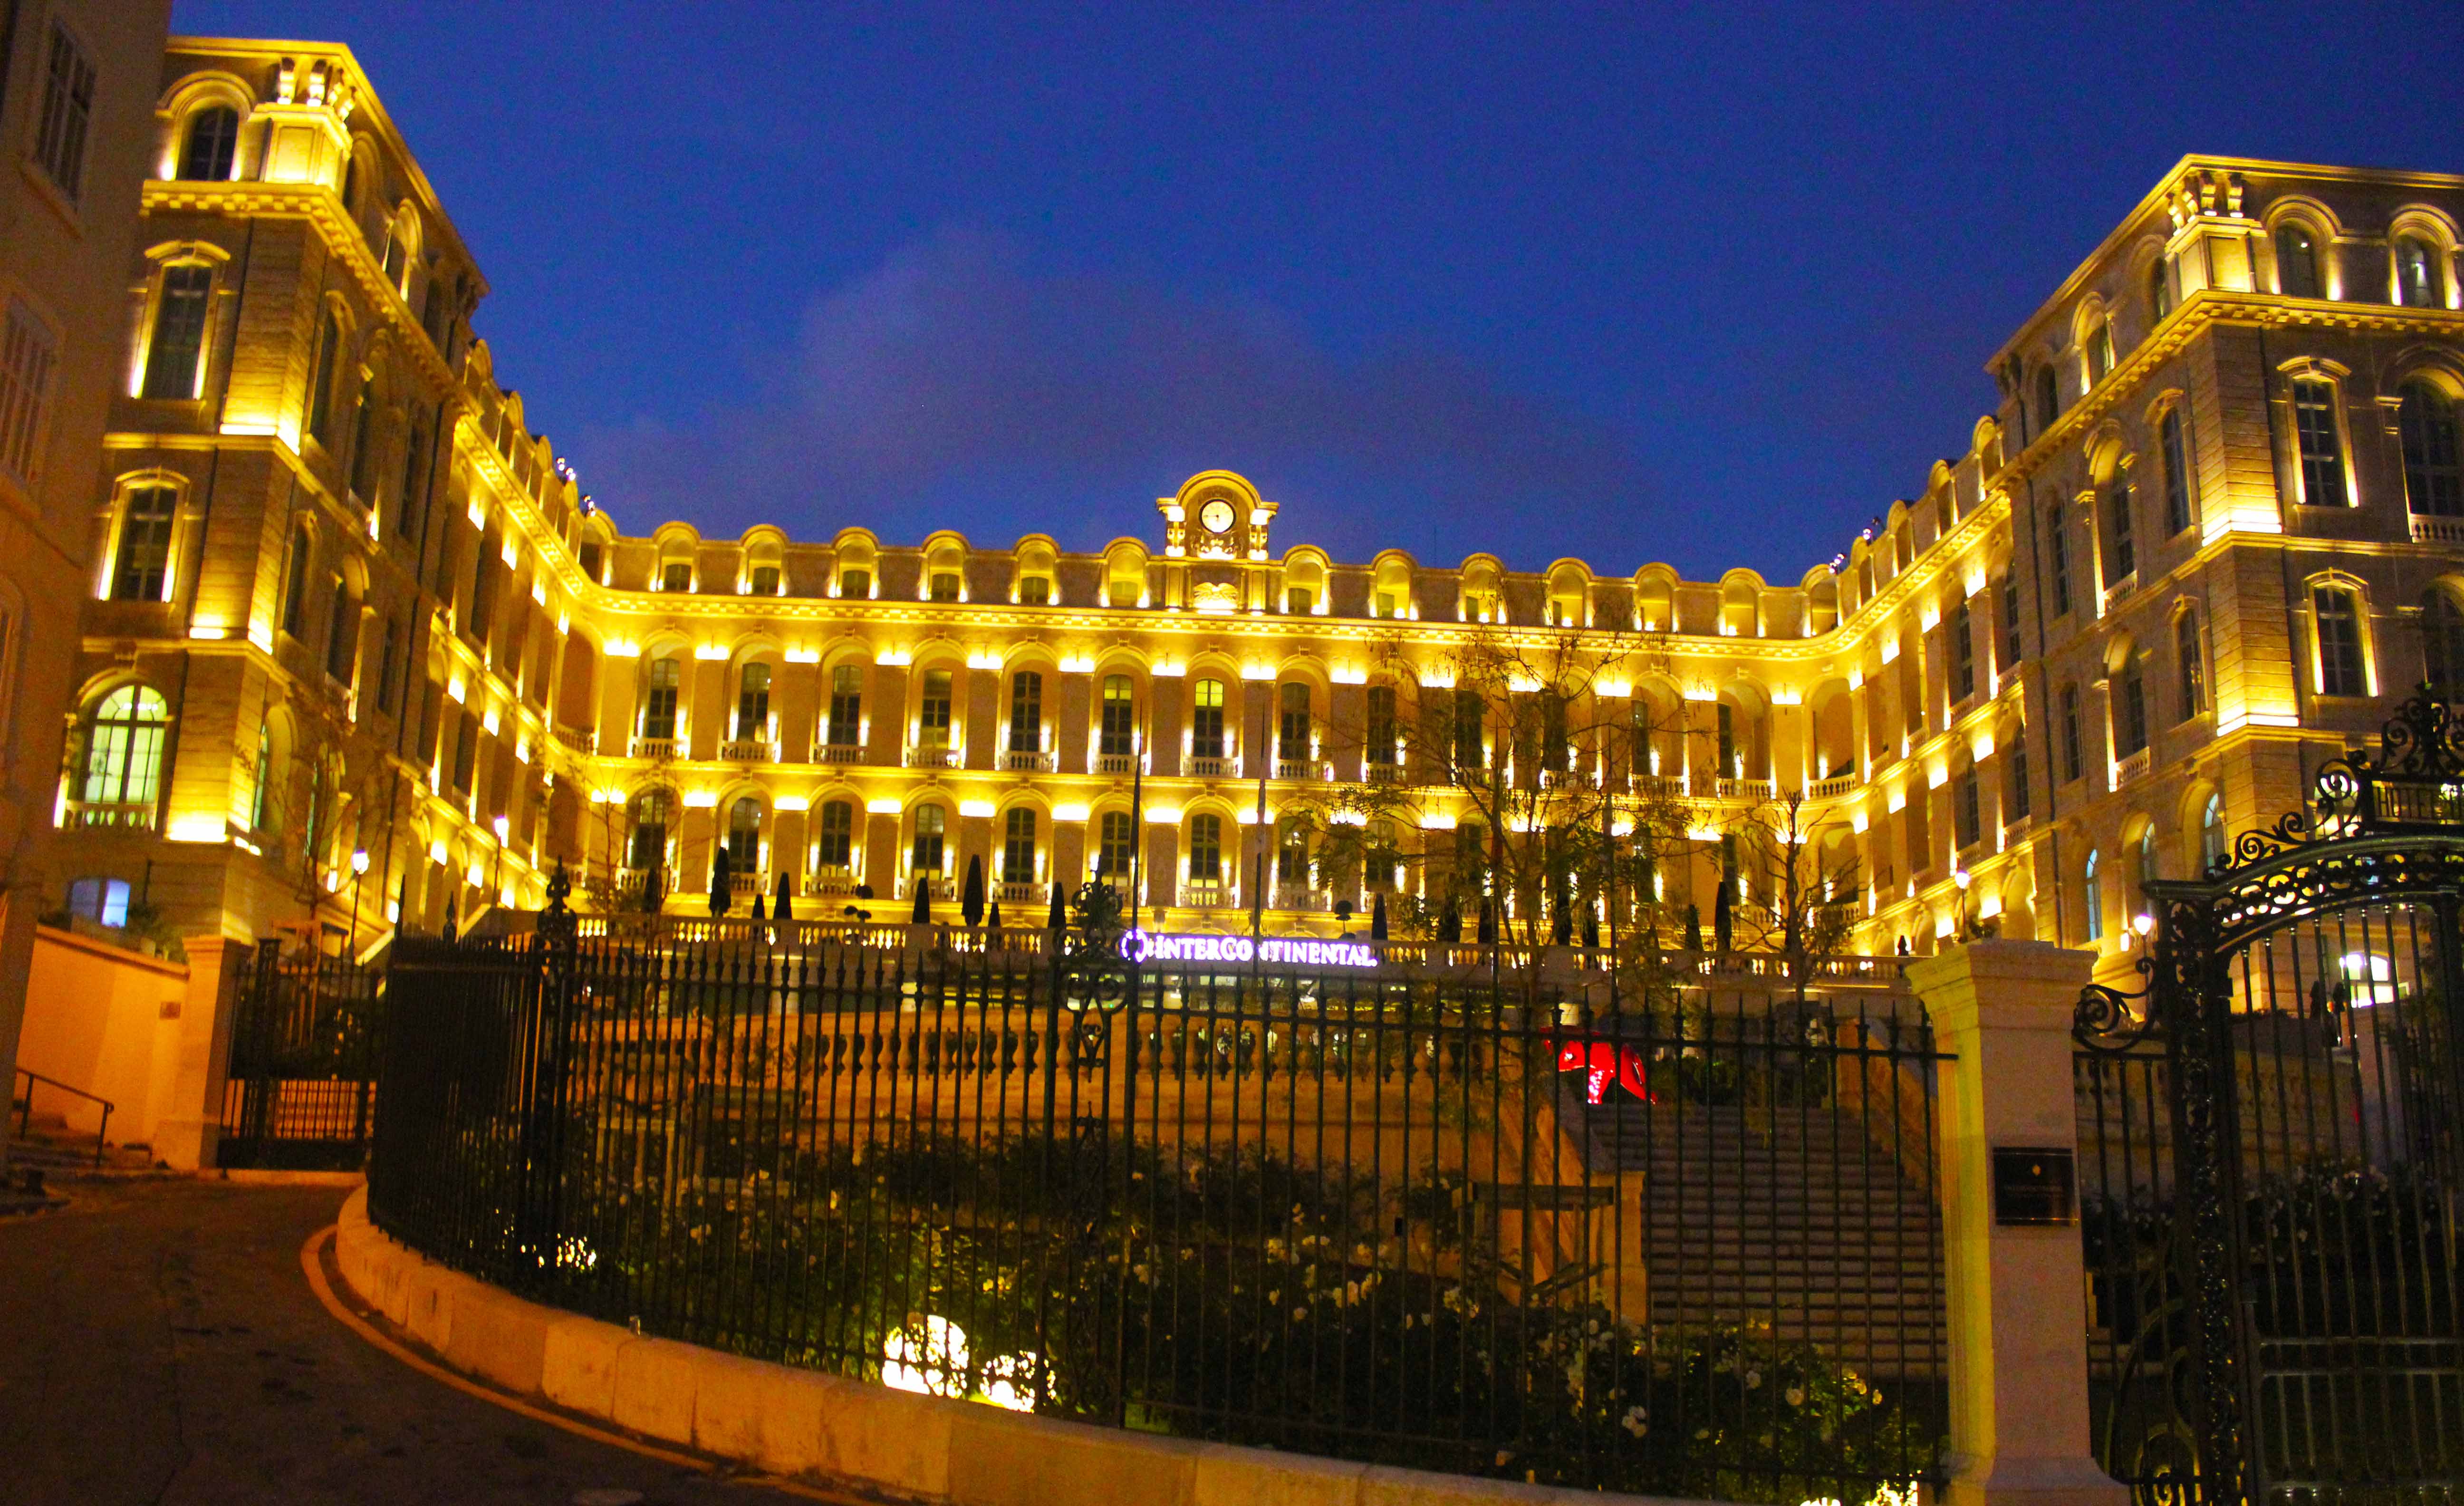 Este é o Intercontinental Marseille - Hotel Dieu onde o TurismoEtc começa sua viagem pela região da Provence